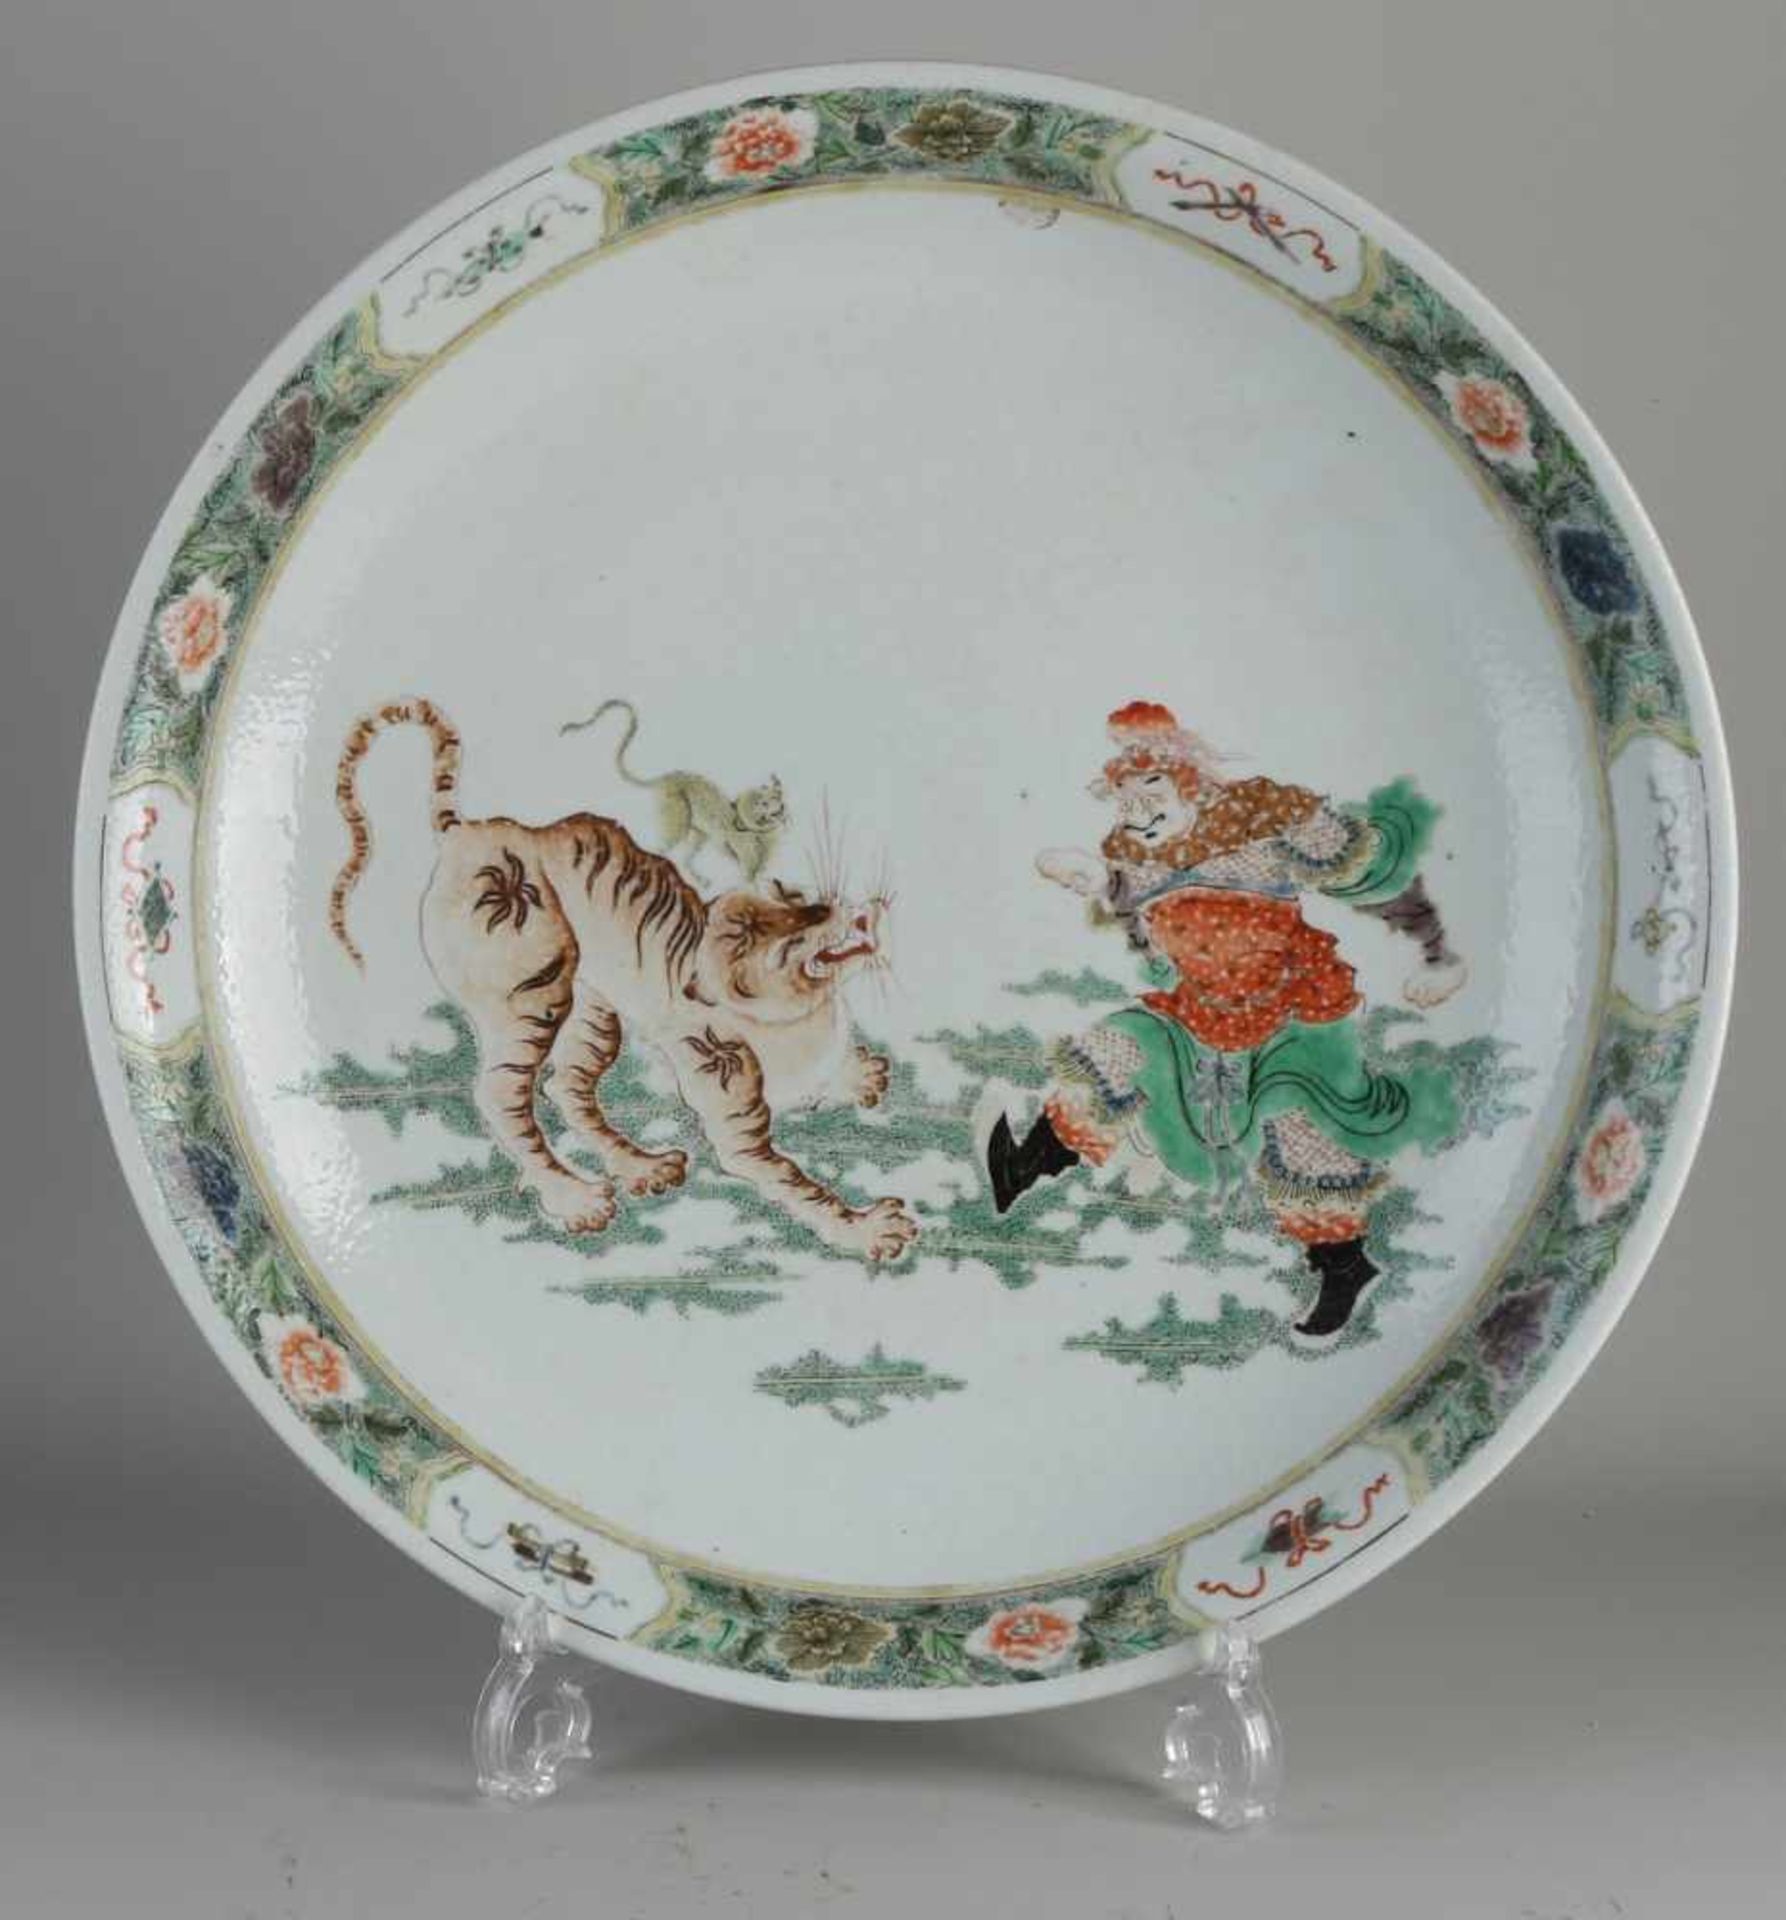 Große chinesische Porzellanschale mit Figur / Tiger / Blumen- und Golddekoration. Abmessungen: H 7